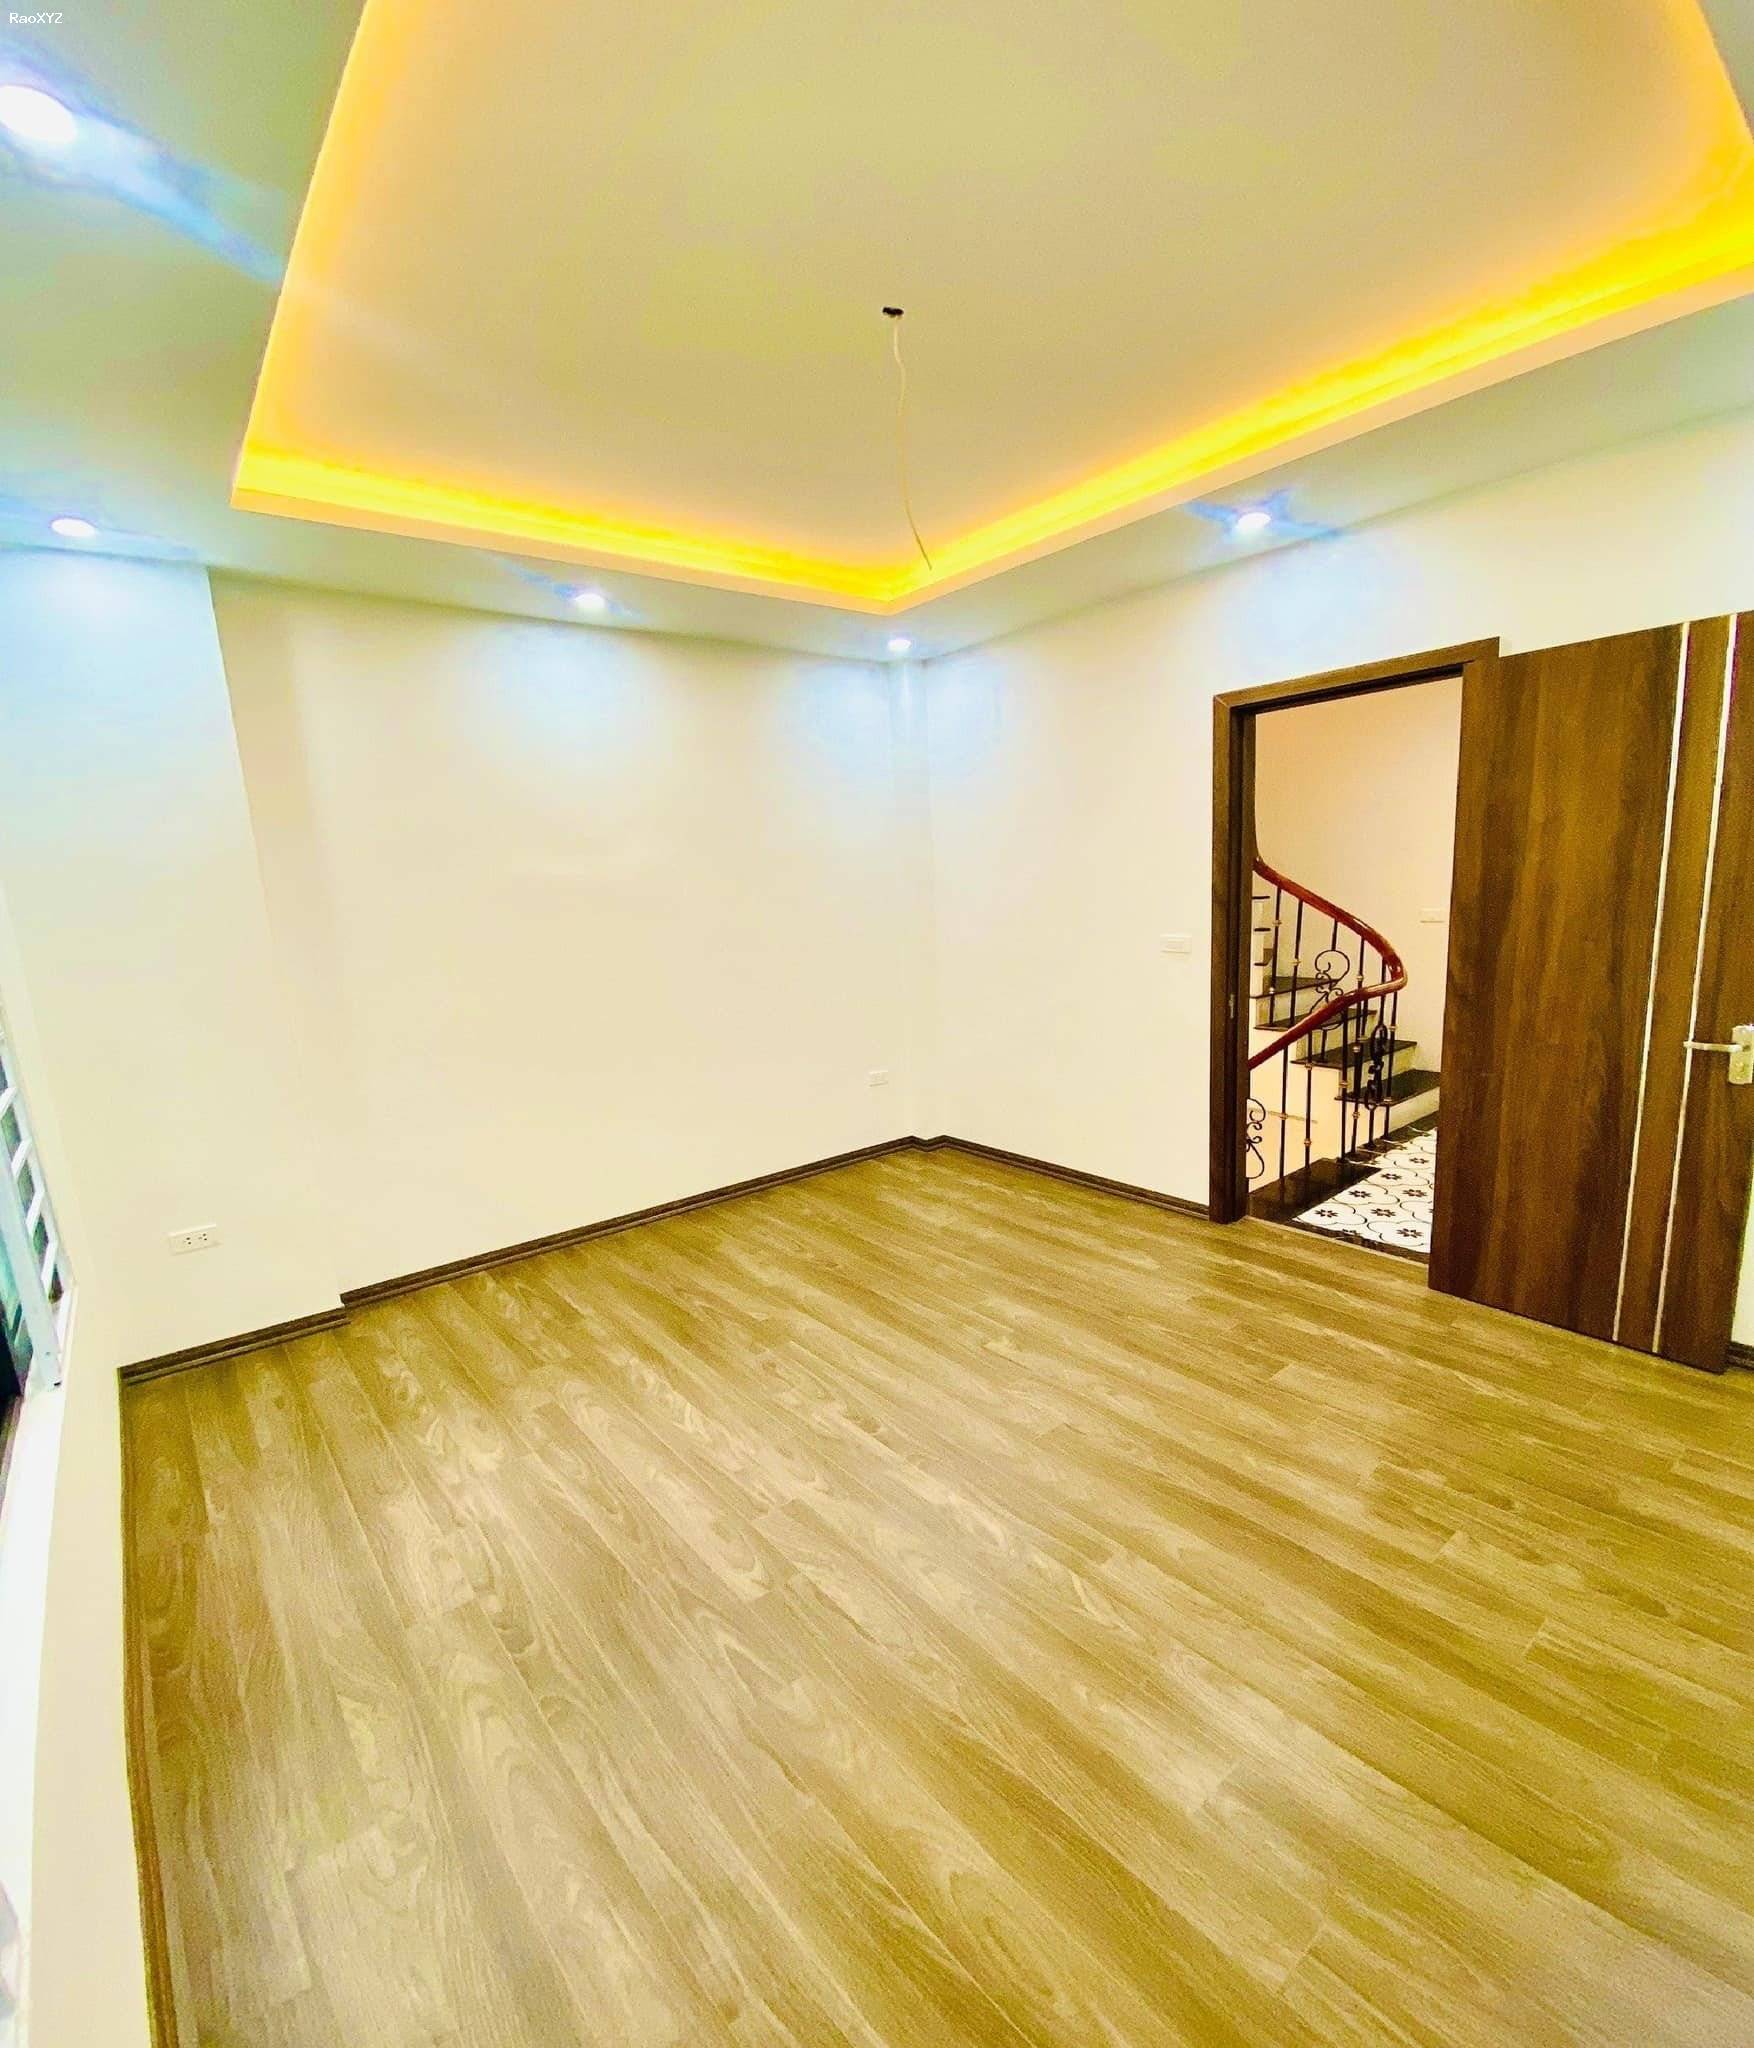 Tôi chủ nhà cho thuê cả nhà mới đẹp, Khu Quang Trung, 80m2x 4.5T- 17 Tr, VP, KD